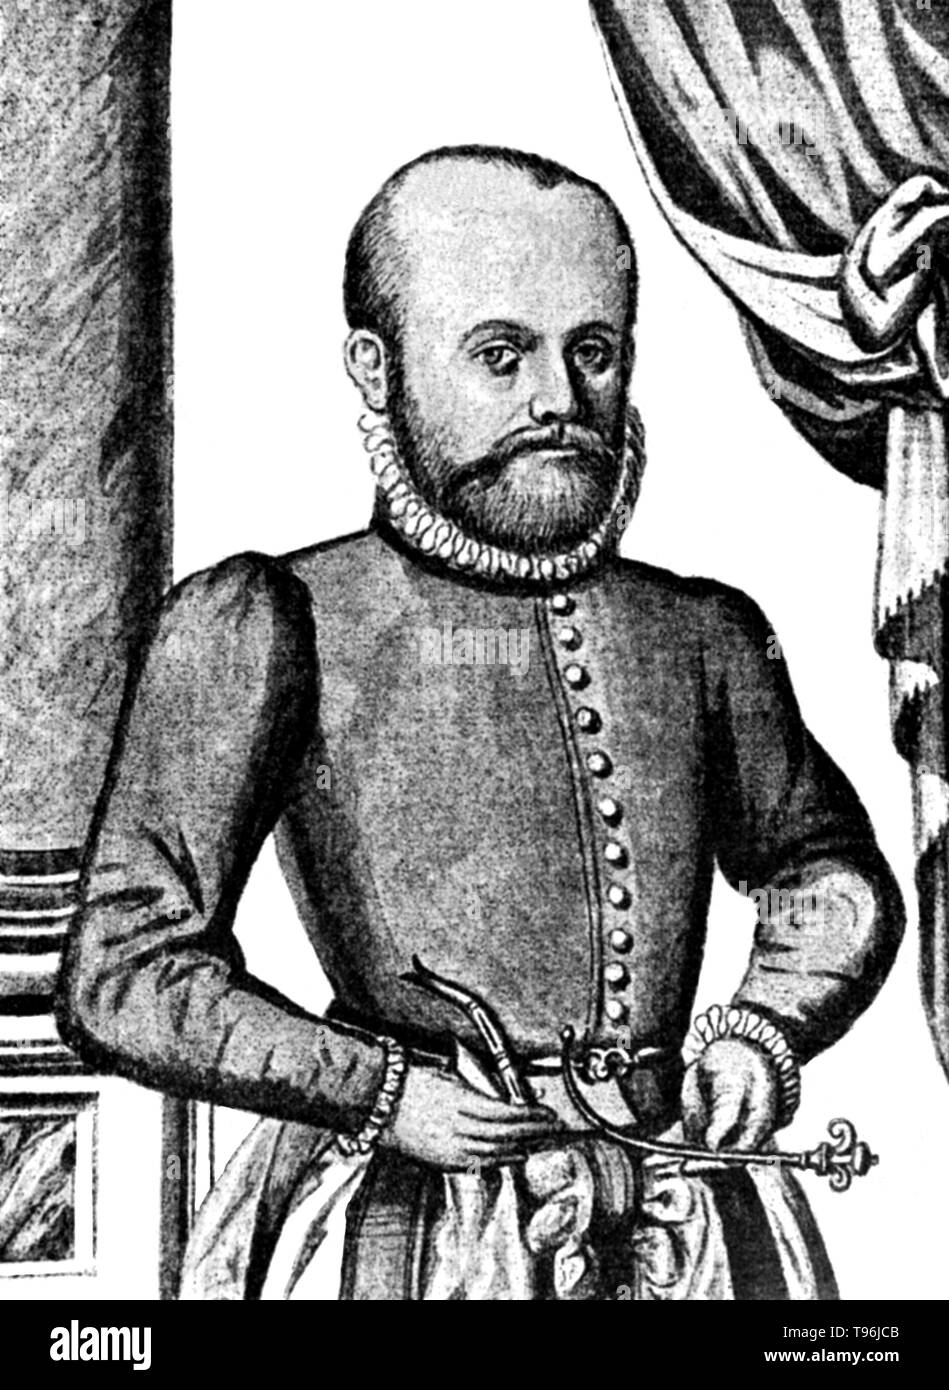 Georg Bartisch (1535-1607) war ein deutscher Arzt. Er begann seine medizinische Laufbahn im Alter von dreizehn Jahren als Lehrling zu einem Friseur Chirurg, und einen erheblichen Teil seines Lebens Bartisch war eine ambulante Operateur. 1588 wurde Gericht Augenarzt zum Herzog August I. von Sachsen. Obwohl nicht akademisch ausgebildeten, er war ein hoch qualifizierte Praktiker der okulären Medizin und Chirurgie betrachtet. Stockfoto